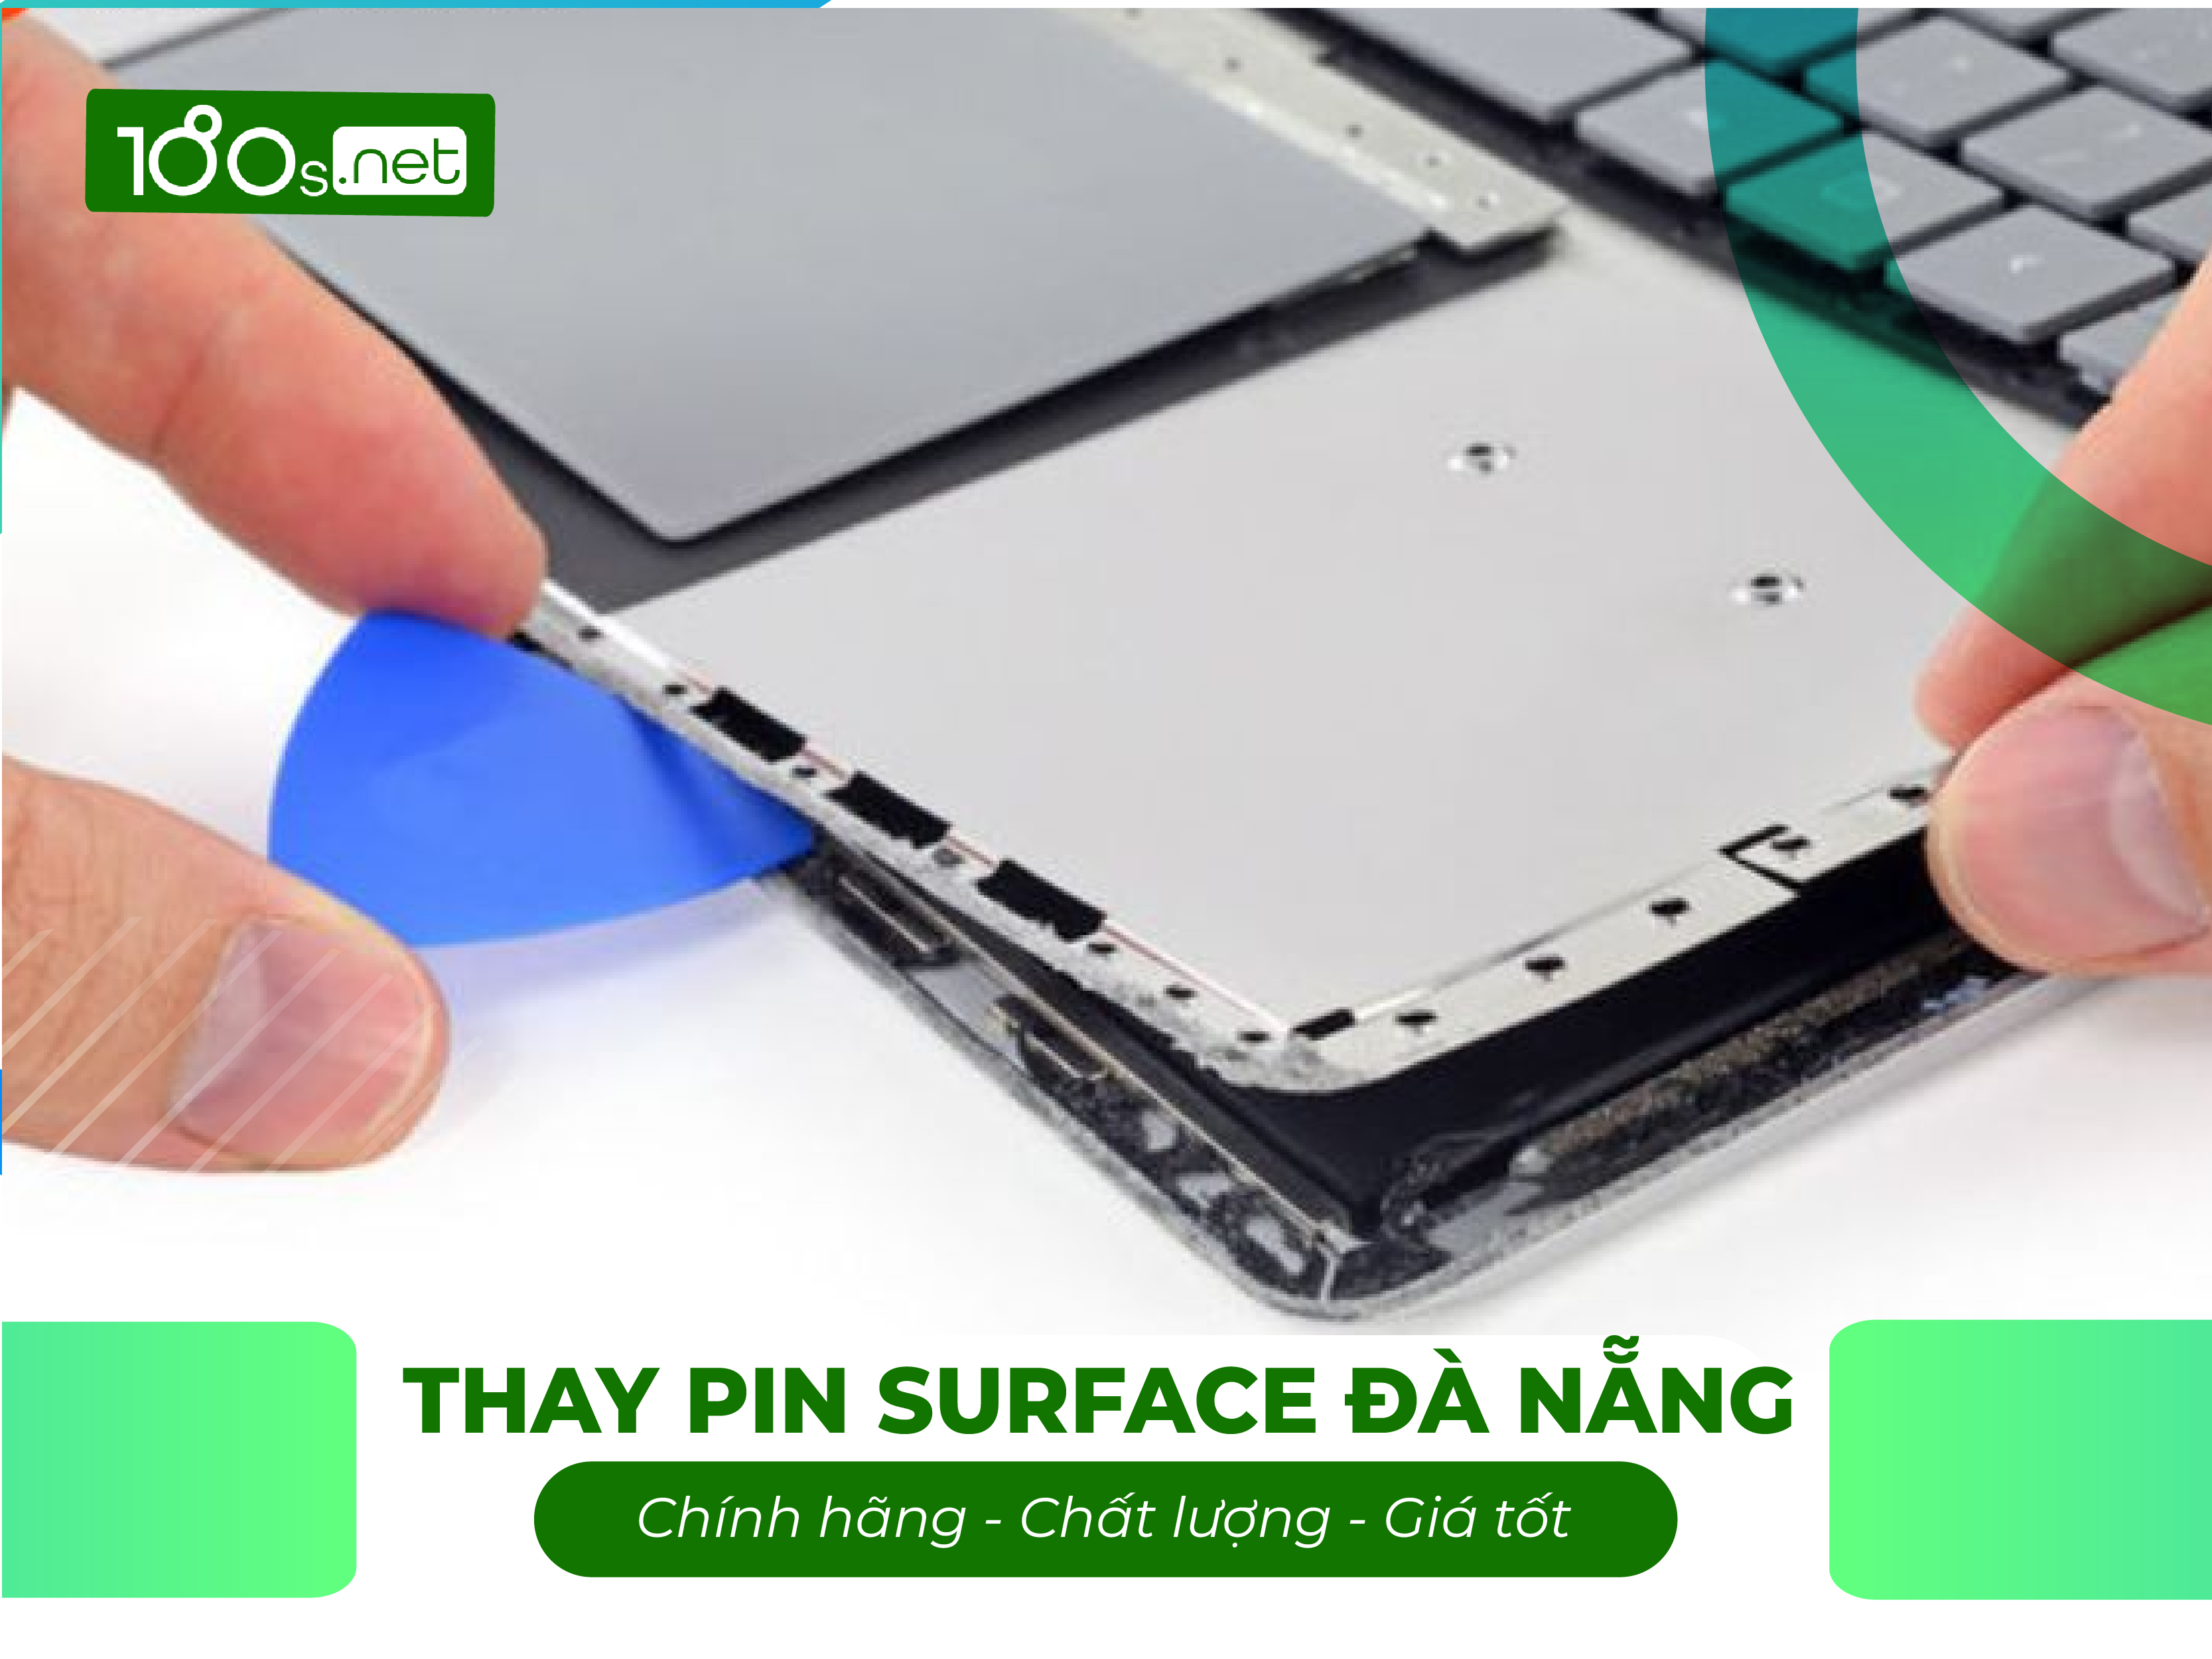 Thay pin Surface chính hãng, chất lượng, giá tốt tại Đà Nẵng